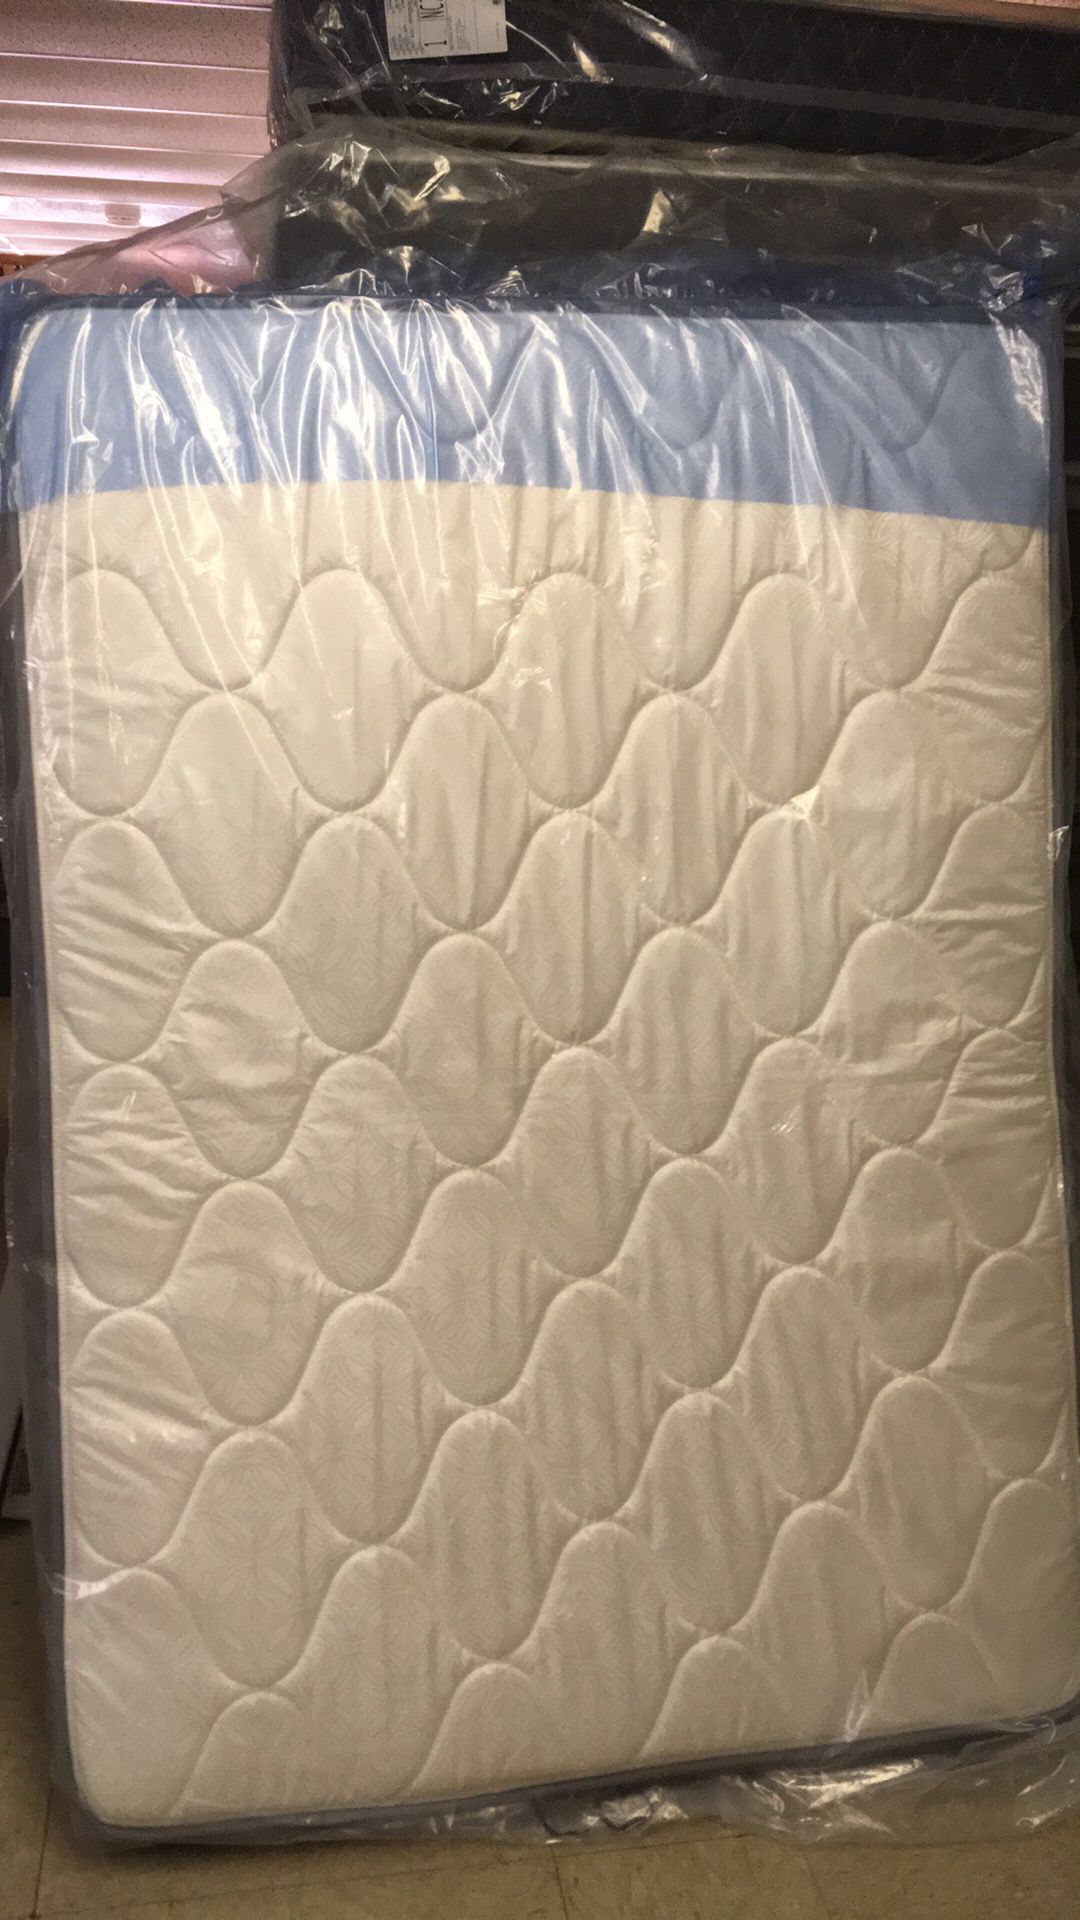 Brand New plush full size mattress